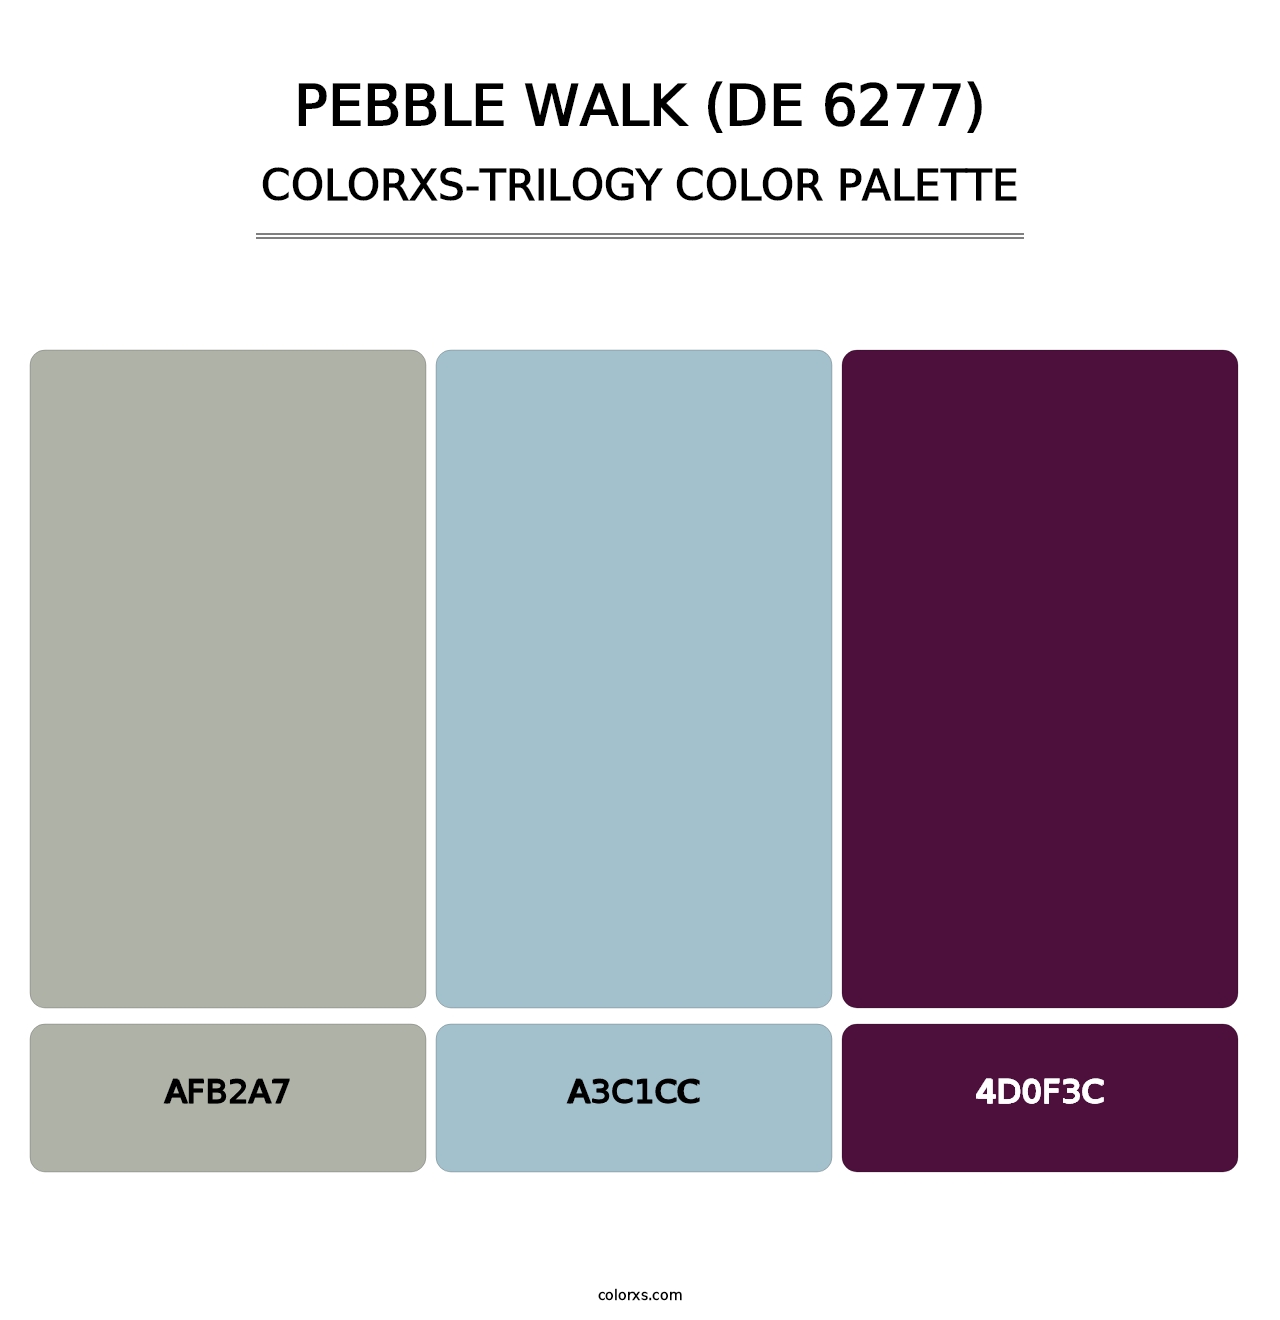 Pebble Walk (DE 6277) - Colorxs Trilogy Palette